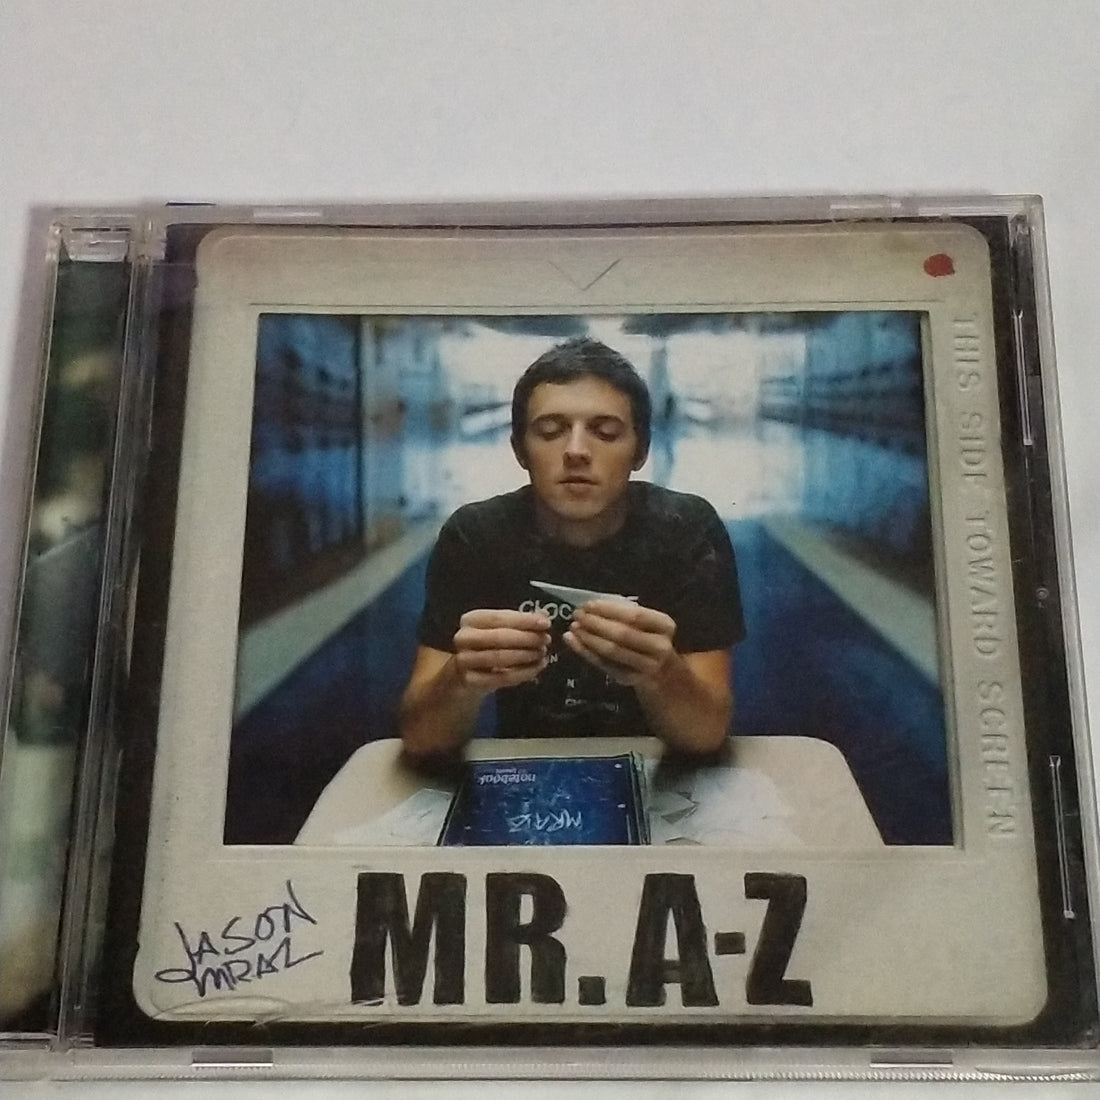 Jason Mraz - Mr. A-Z (CD) (VG)